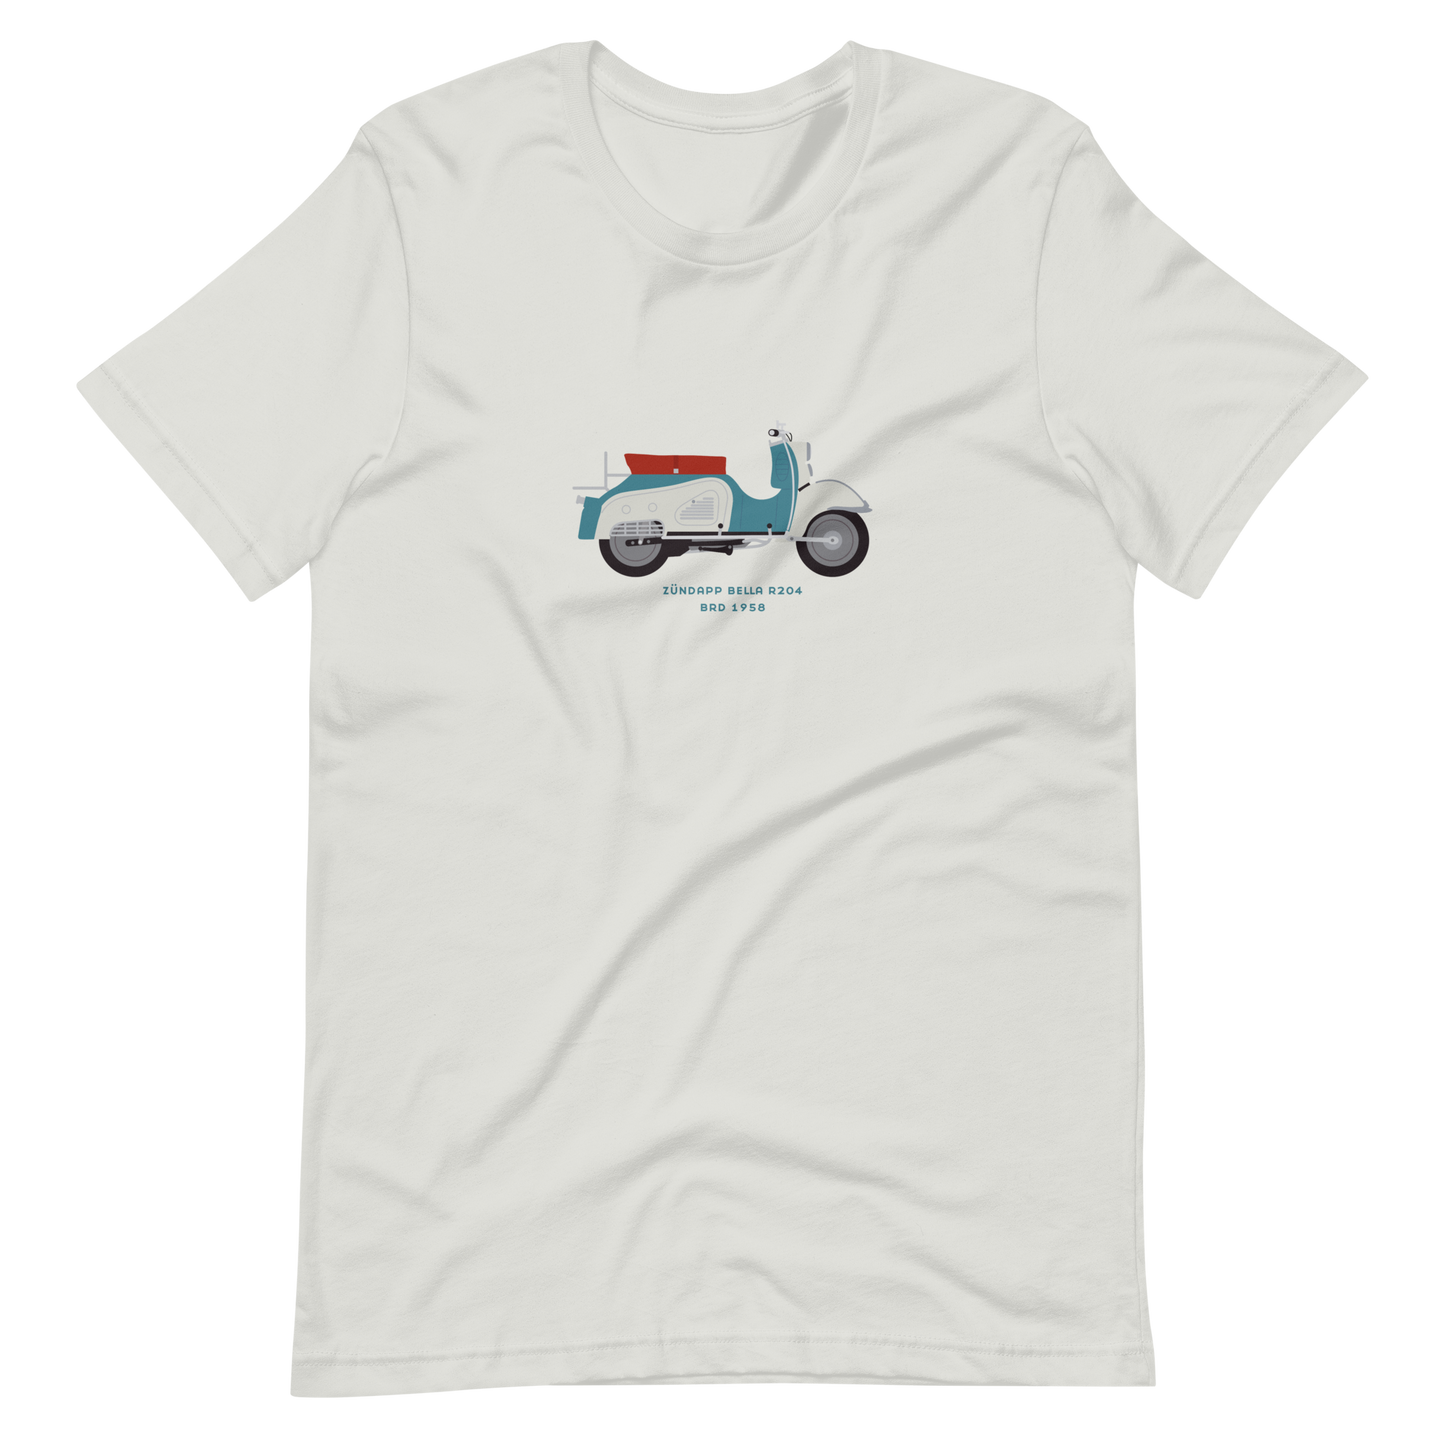 T-Shirt Scooter Zündapp Bella R204, BRD 1958